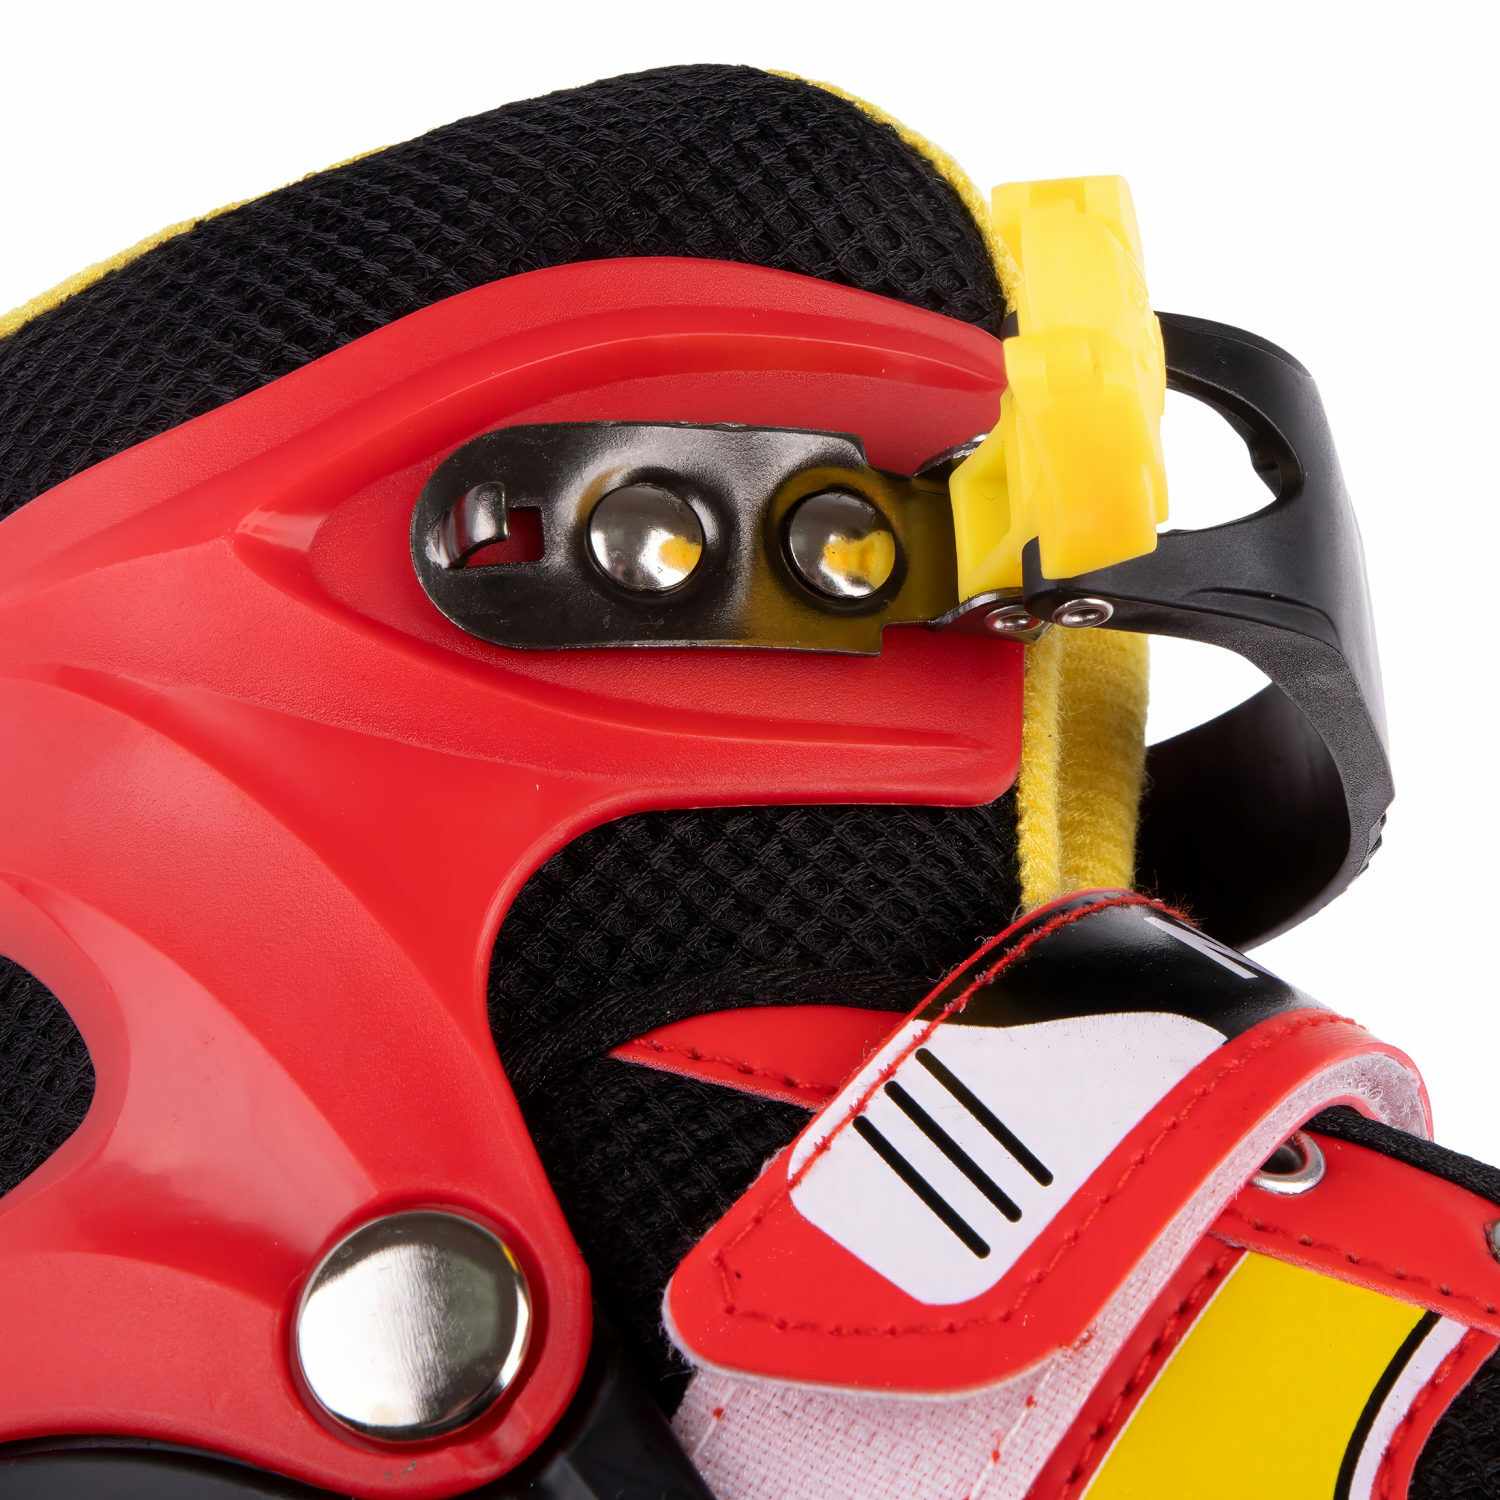 Ролики Navigator детские раздвижные 30 - 33 размер с защитой и шлемом красный - фото 17